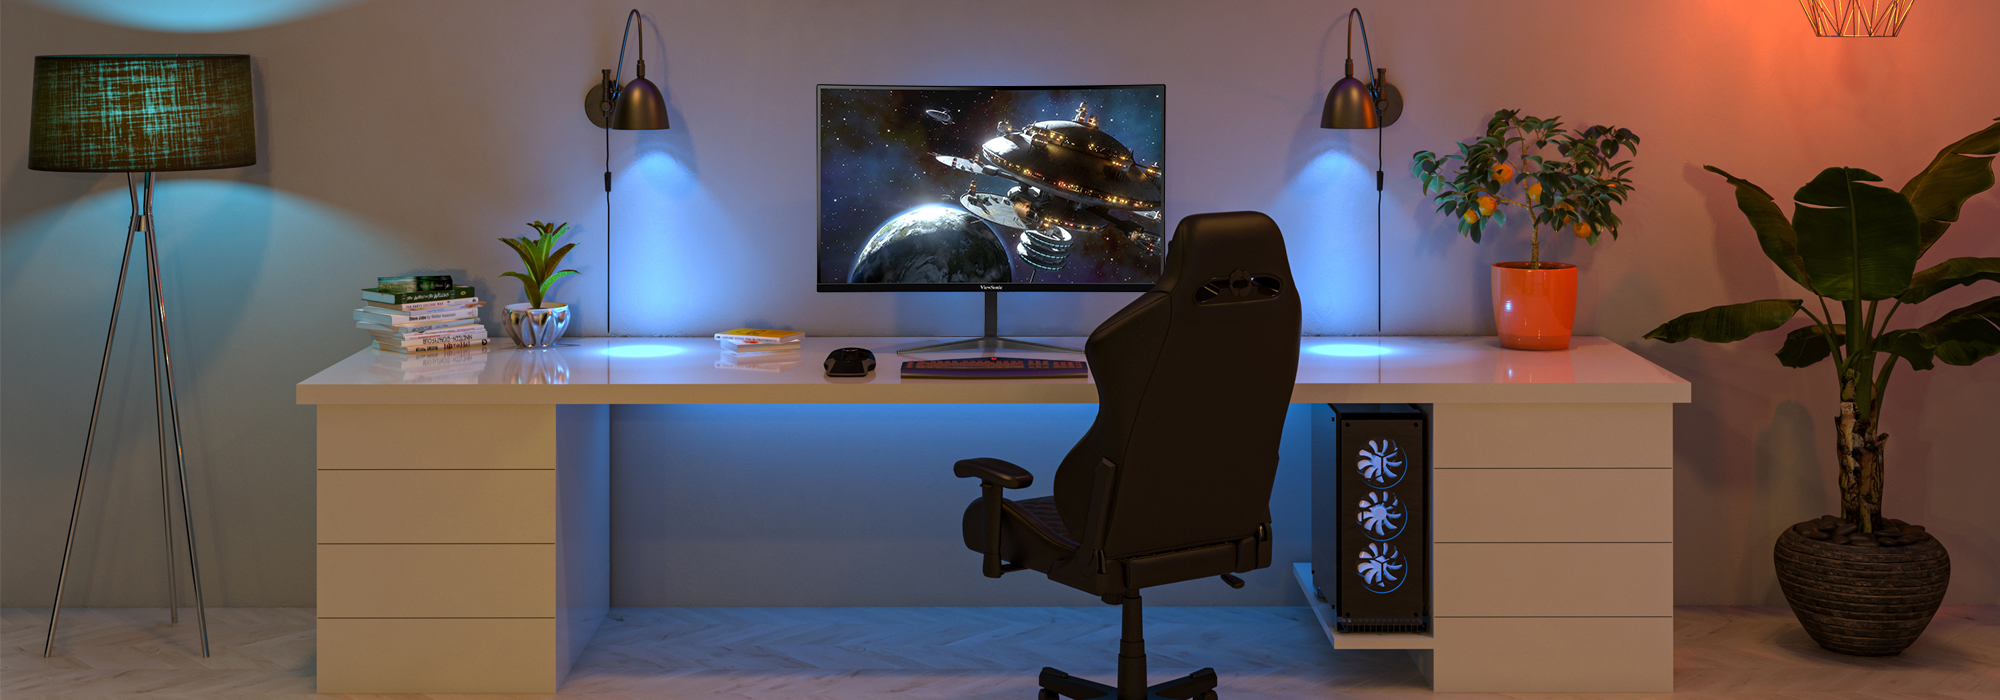 ViewSonic ofrece línea VX18 de monitores para gaming y entretenimiento en el hogar, ideal para regalar en estas fiestas